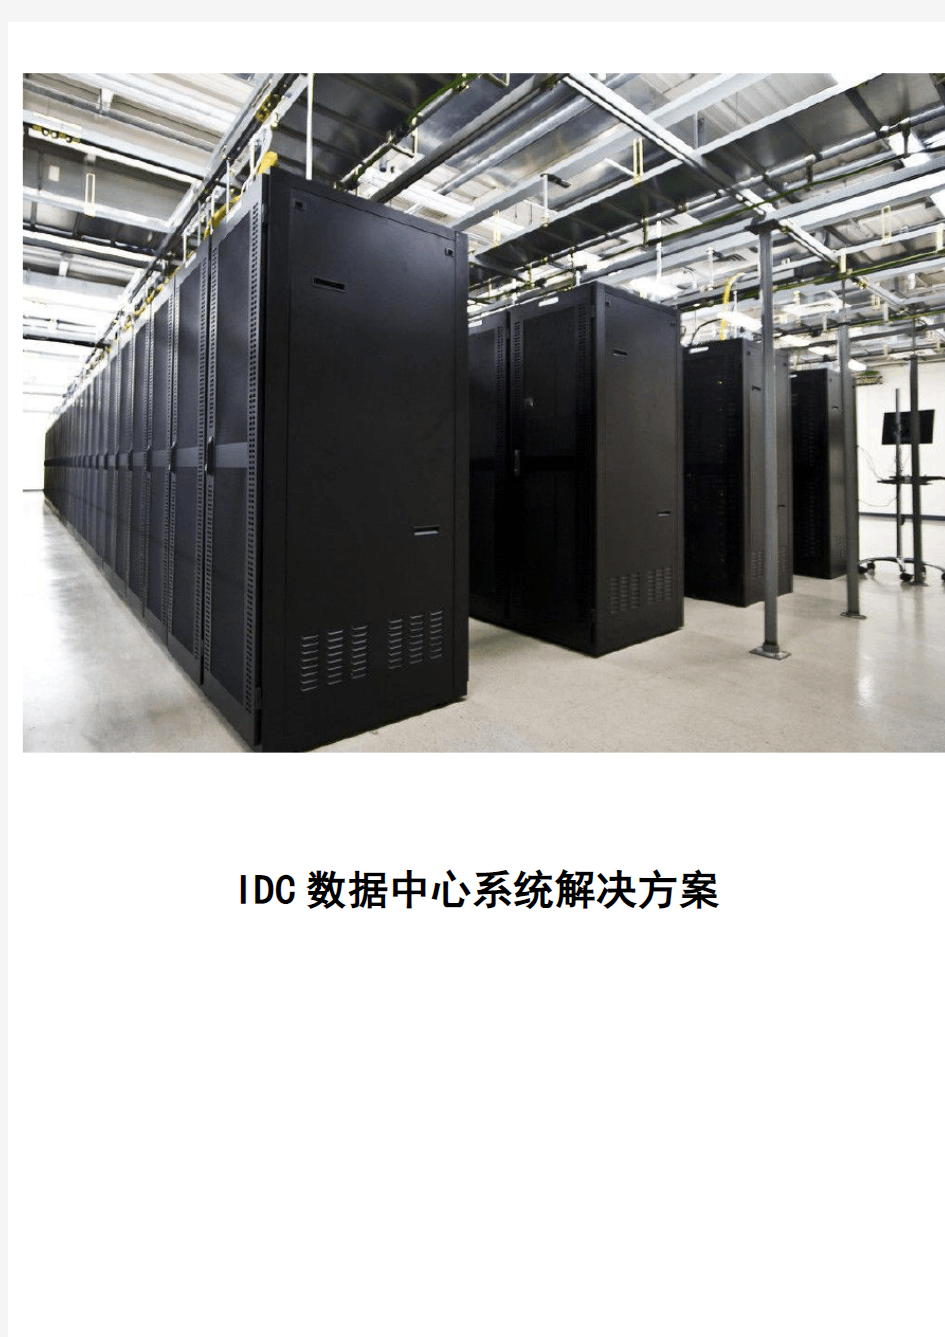 IDC数据中心系统解决方案